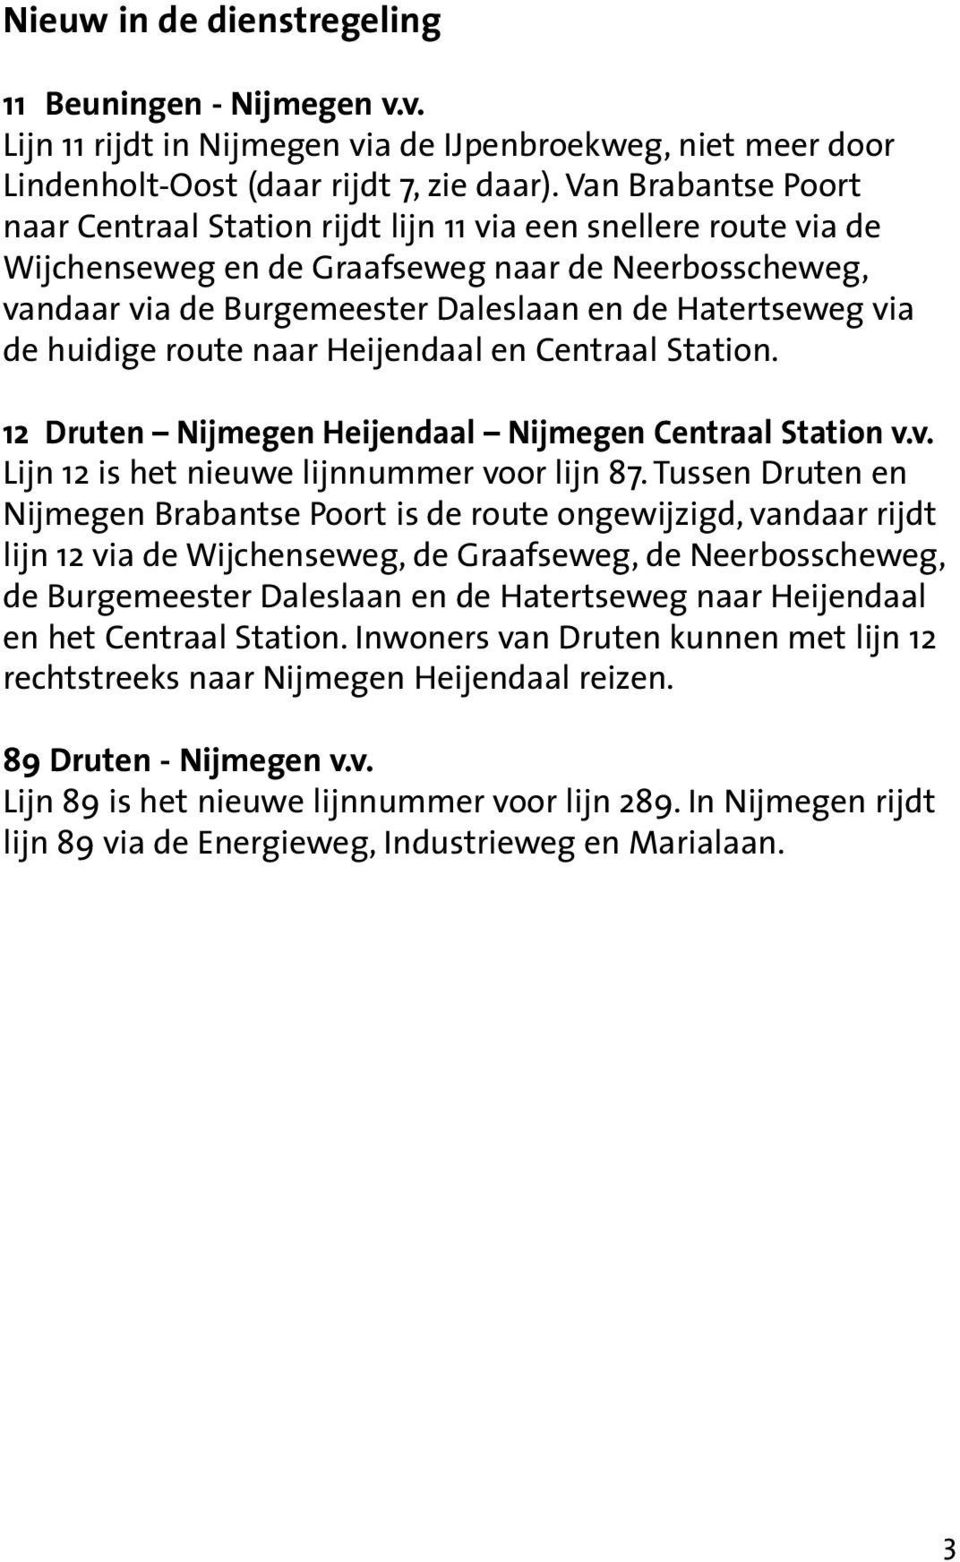 de huidige route naar Heijendaal en Centraal Station. 12 Druten Nijmegen Heijendaal Nijmegen Centraal Station v.v. Lijn 12 is het nieuwe lijnnummer voor lijn 87.